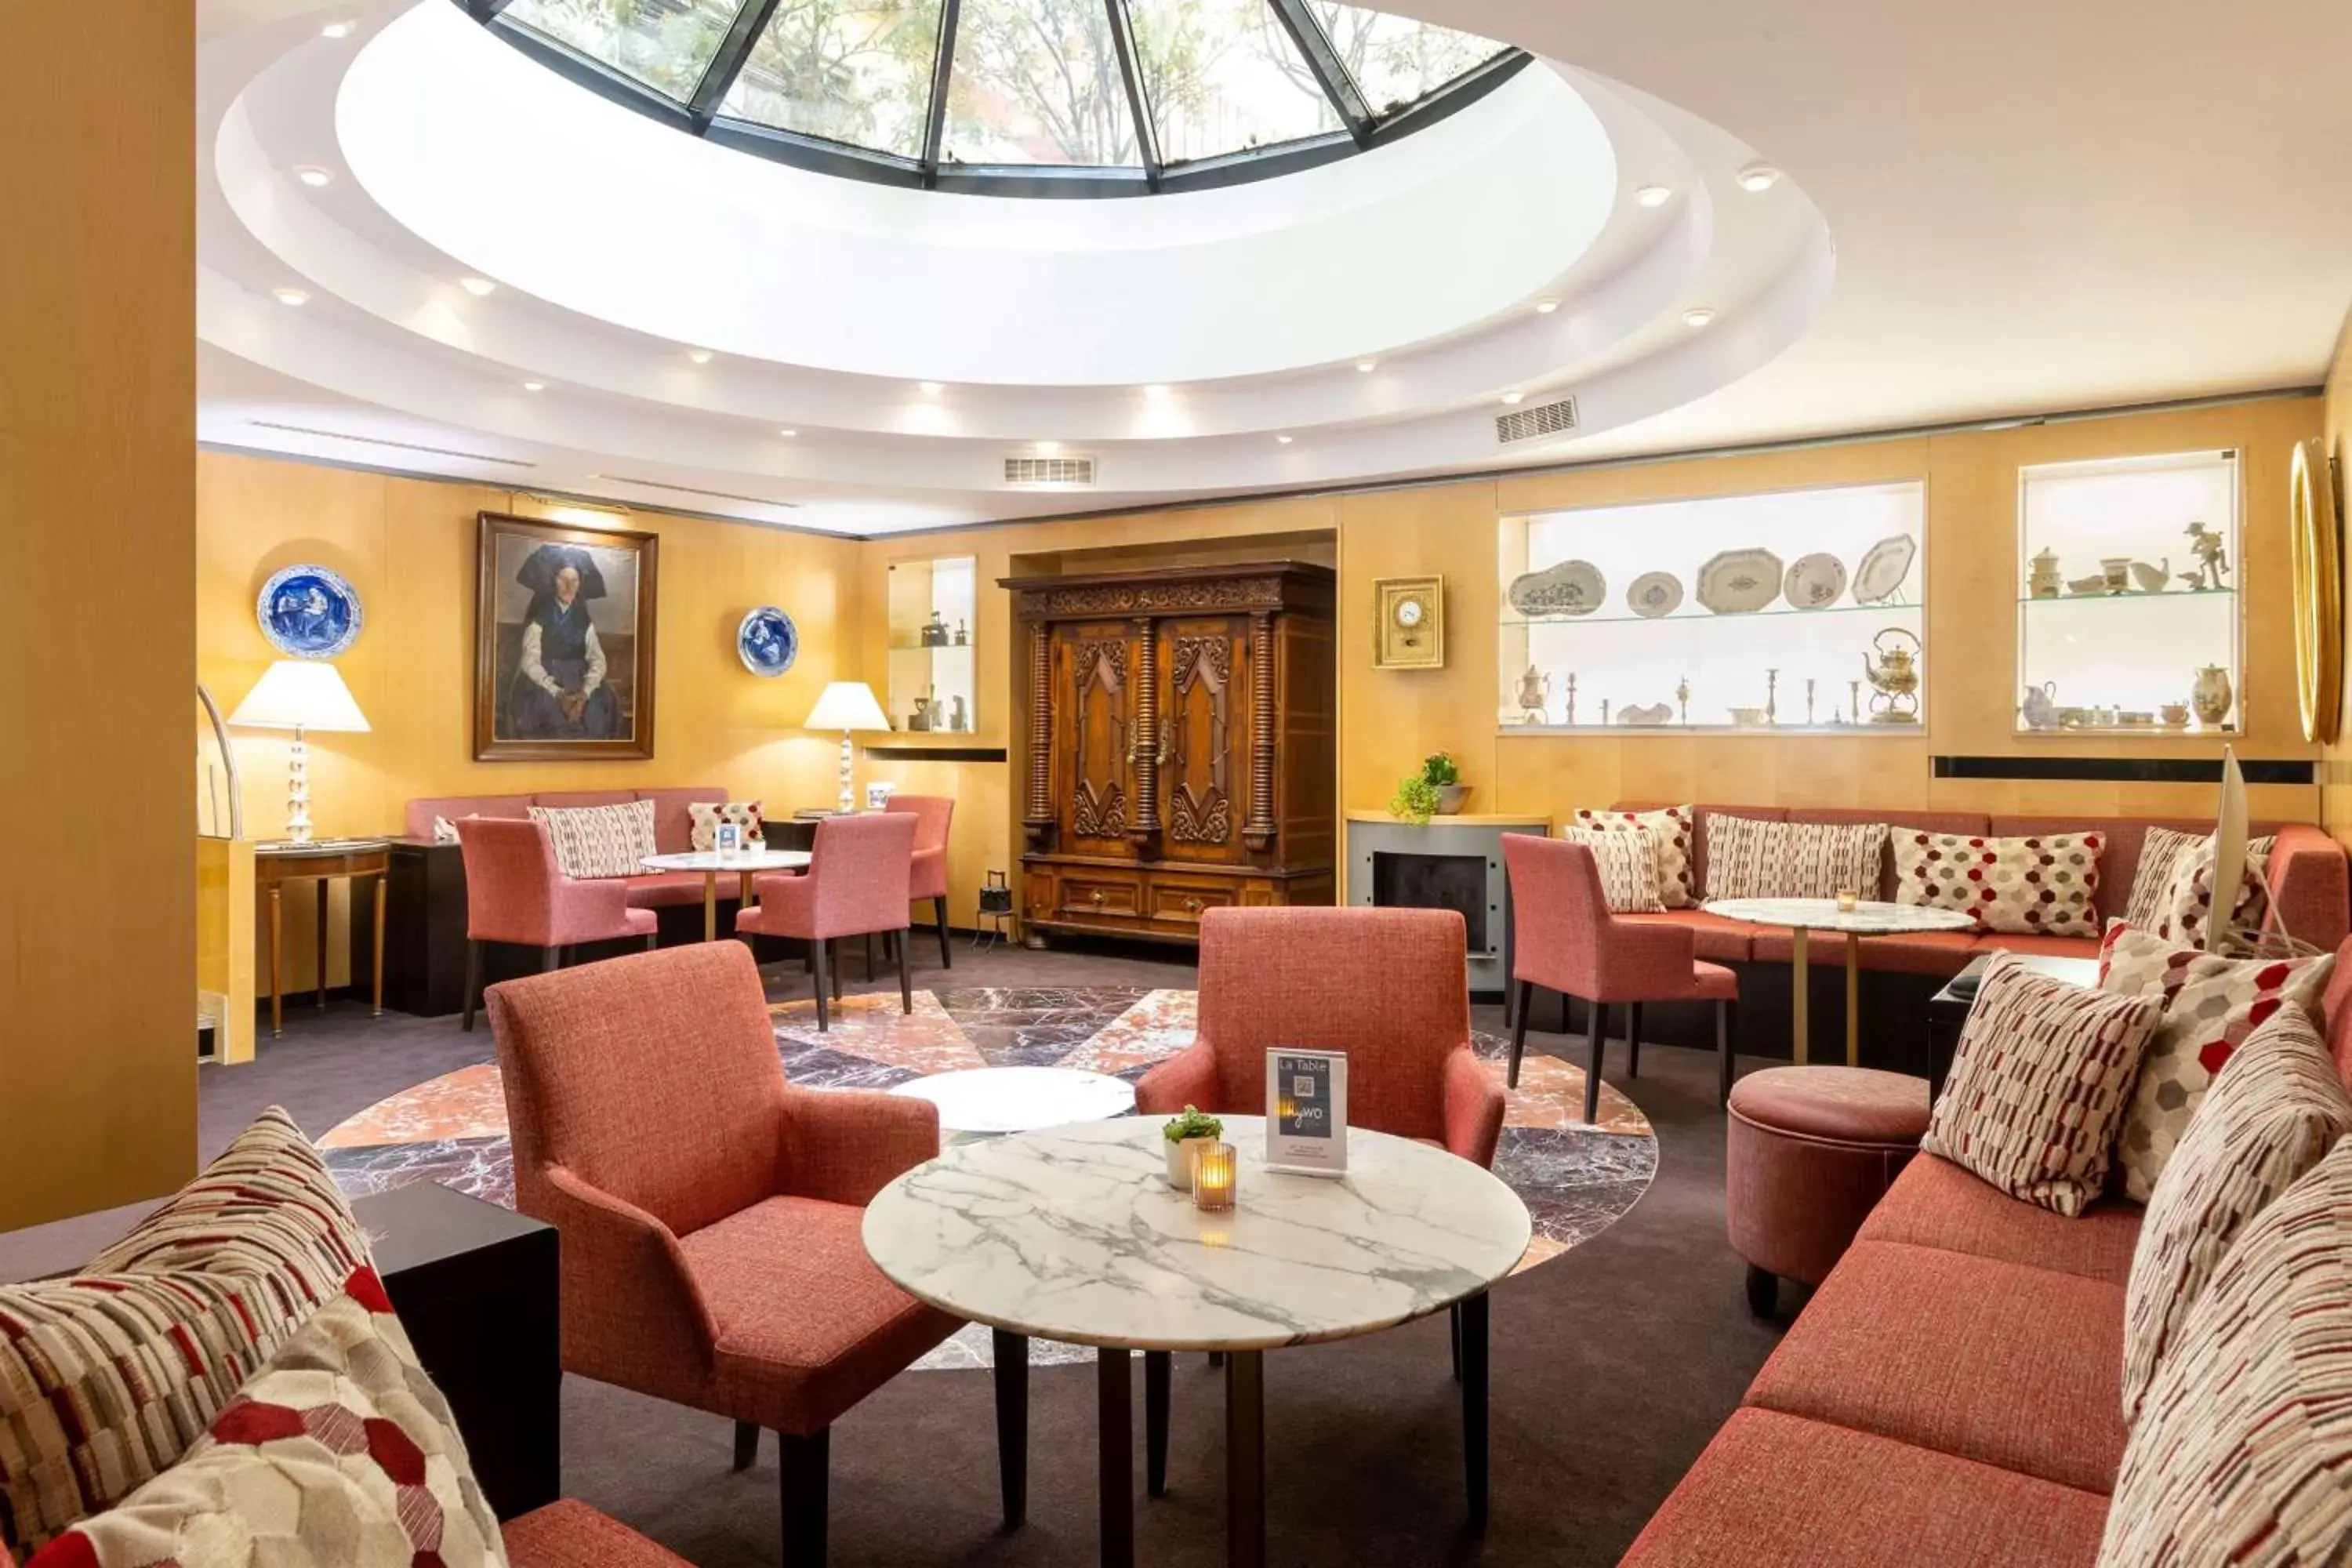 Lounge or bar, Restaurant/Places to Eat in Best Western Plus Monopole Métropole